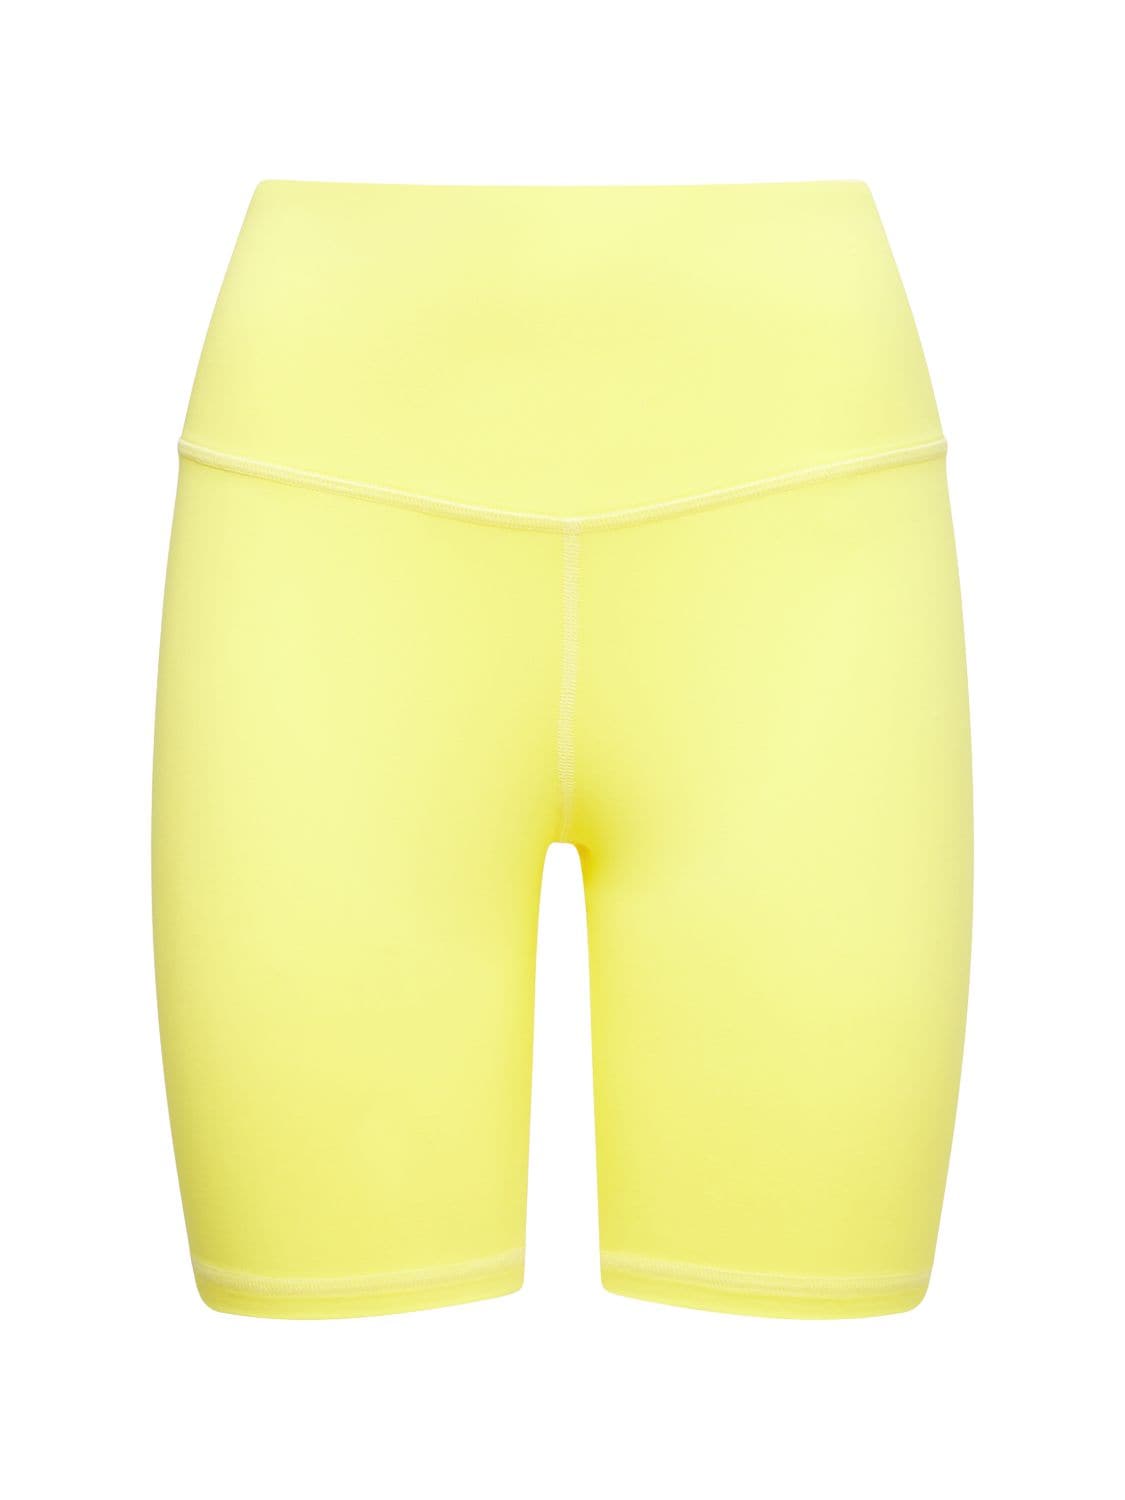 Michi Instinct Bike Shorts In Yellow